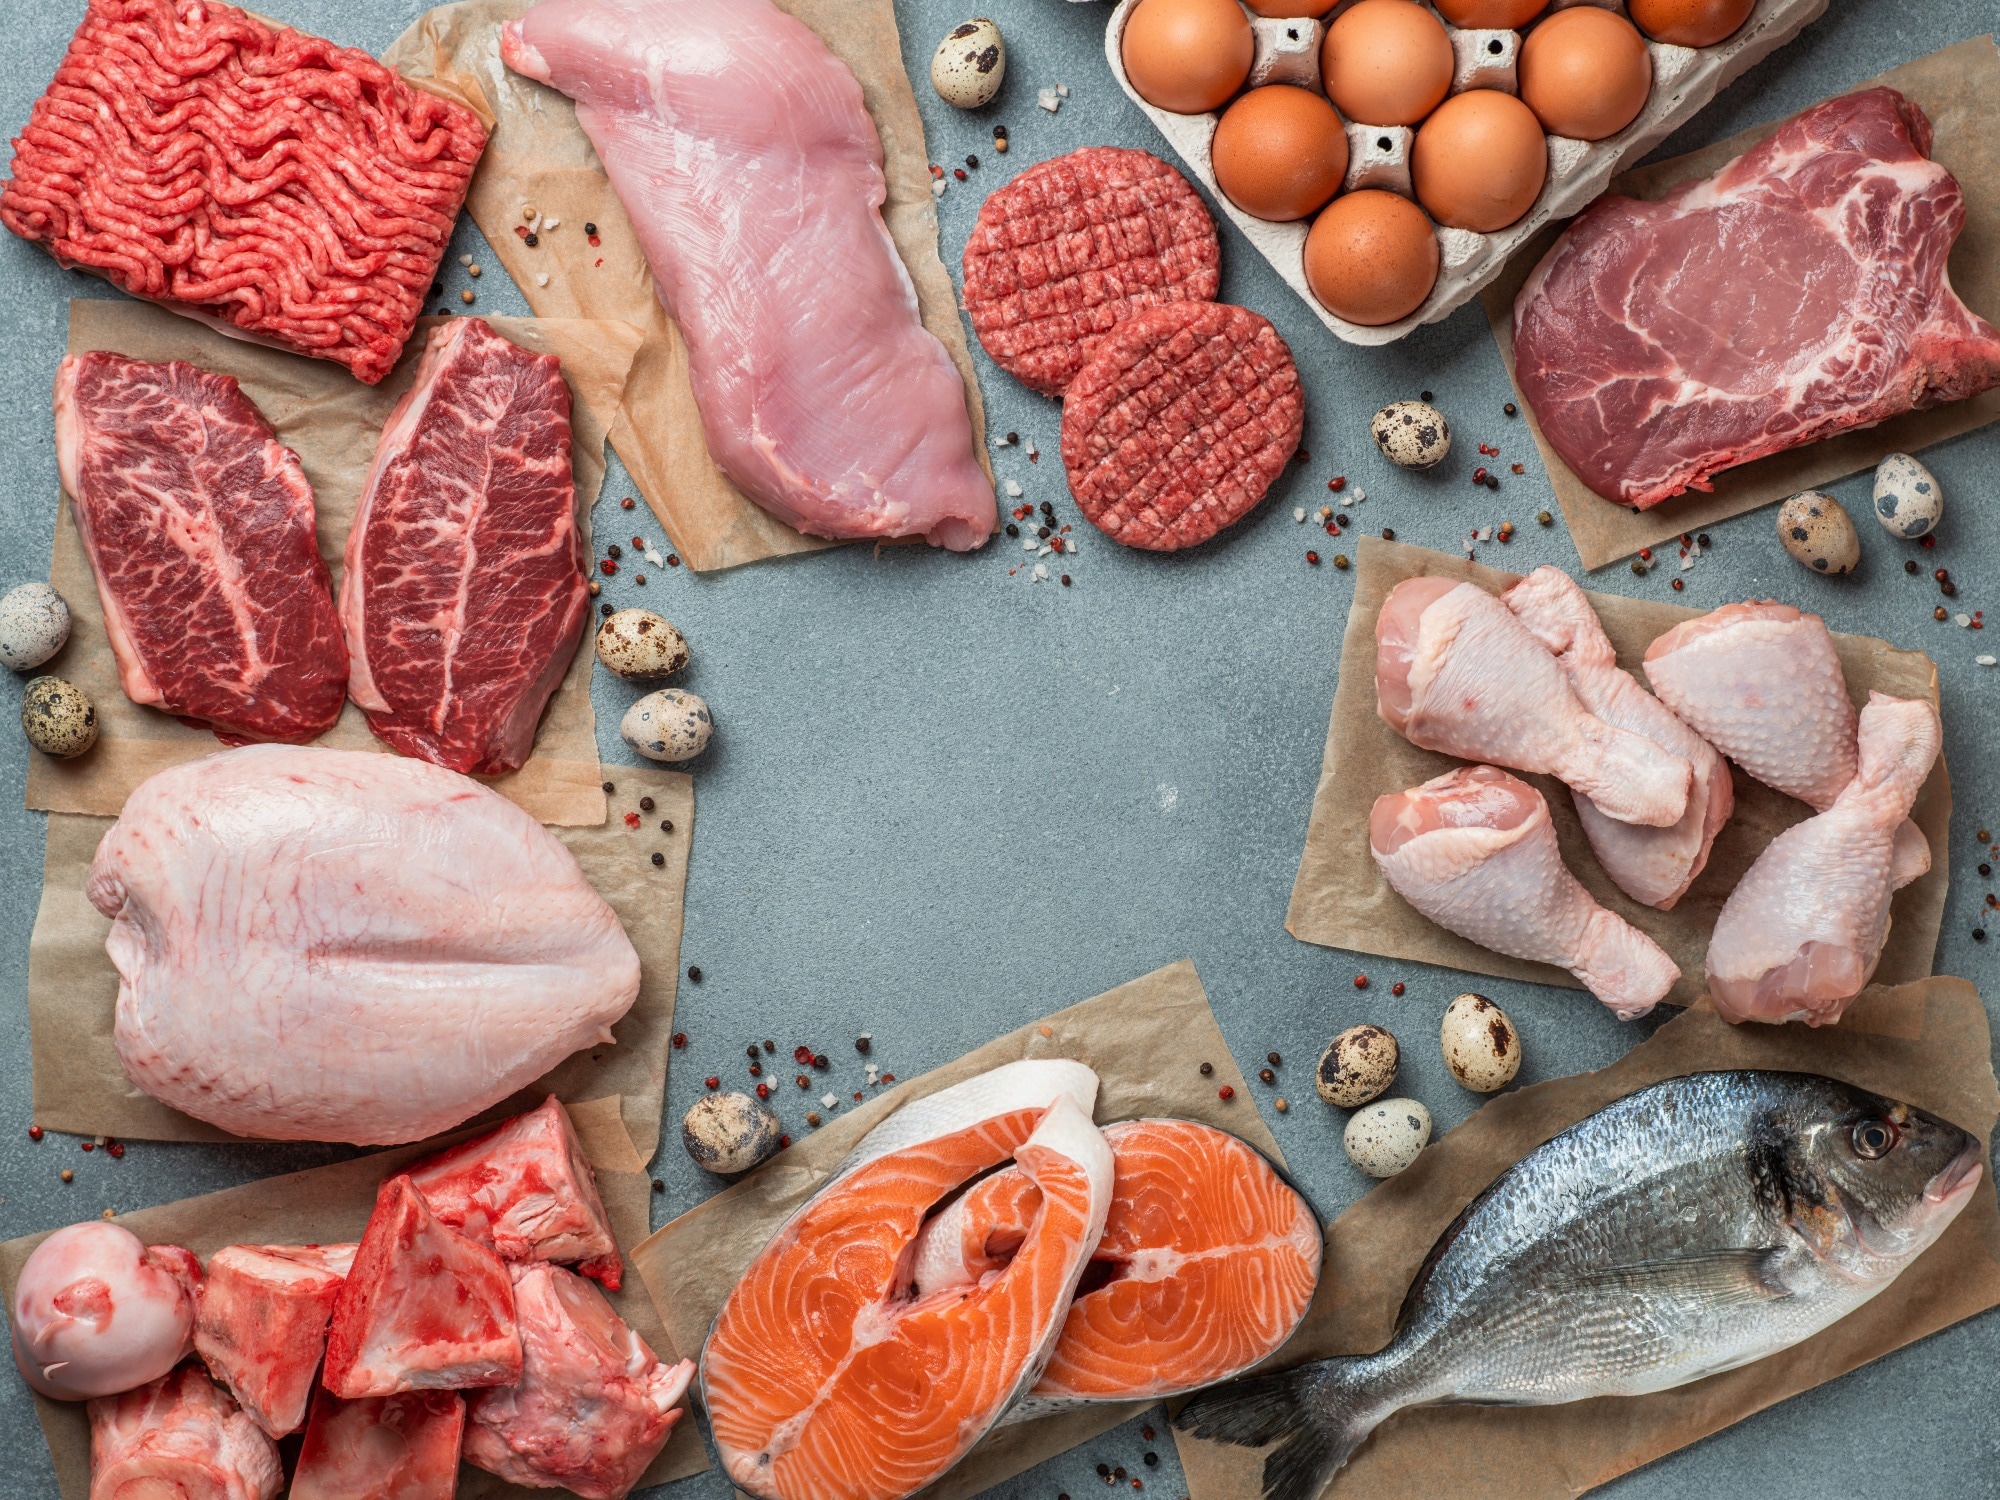 Étude : L'approvisionnement total en viande (viande) peut être un facteur de risque important pour les maladies cardiovasculaires dans le monde.  Crédit d'image : Fascinant / Shutterstock.com